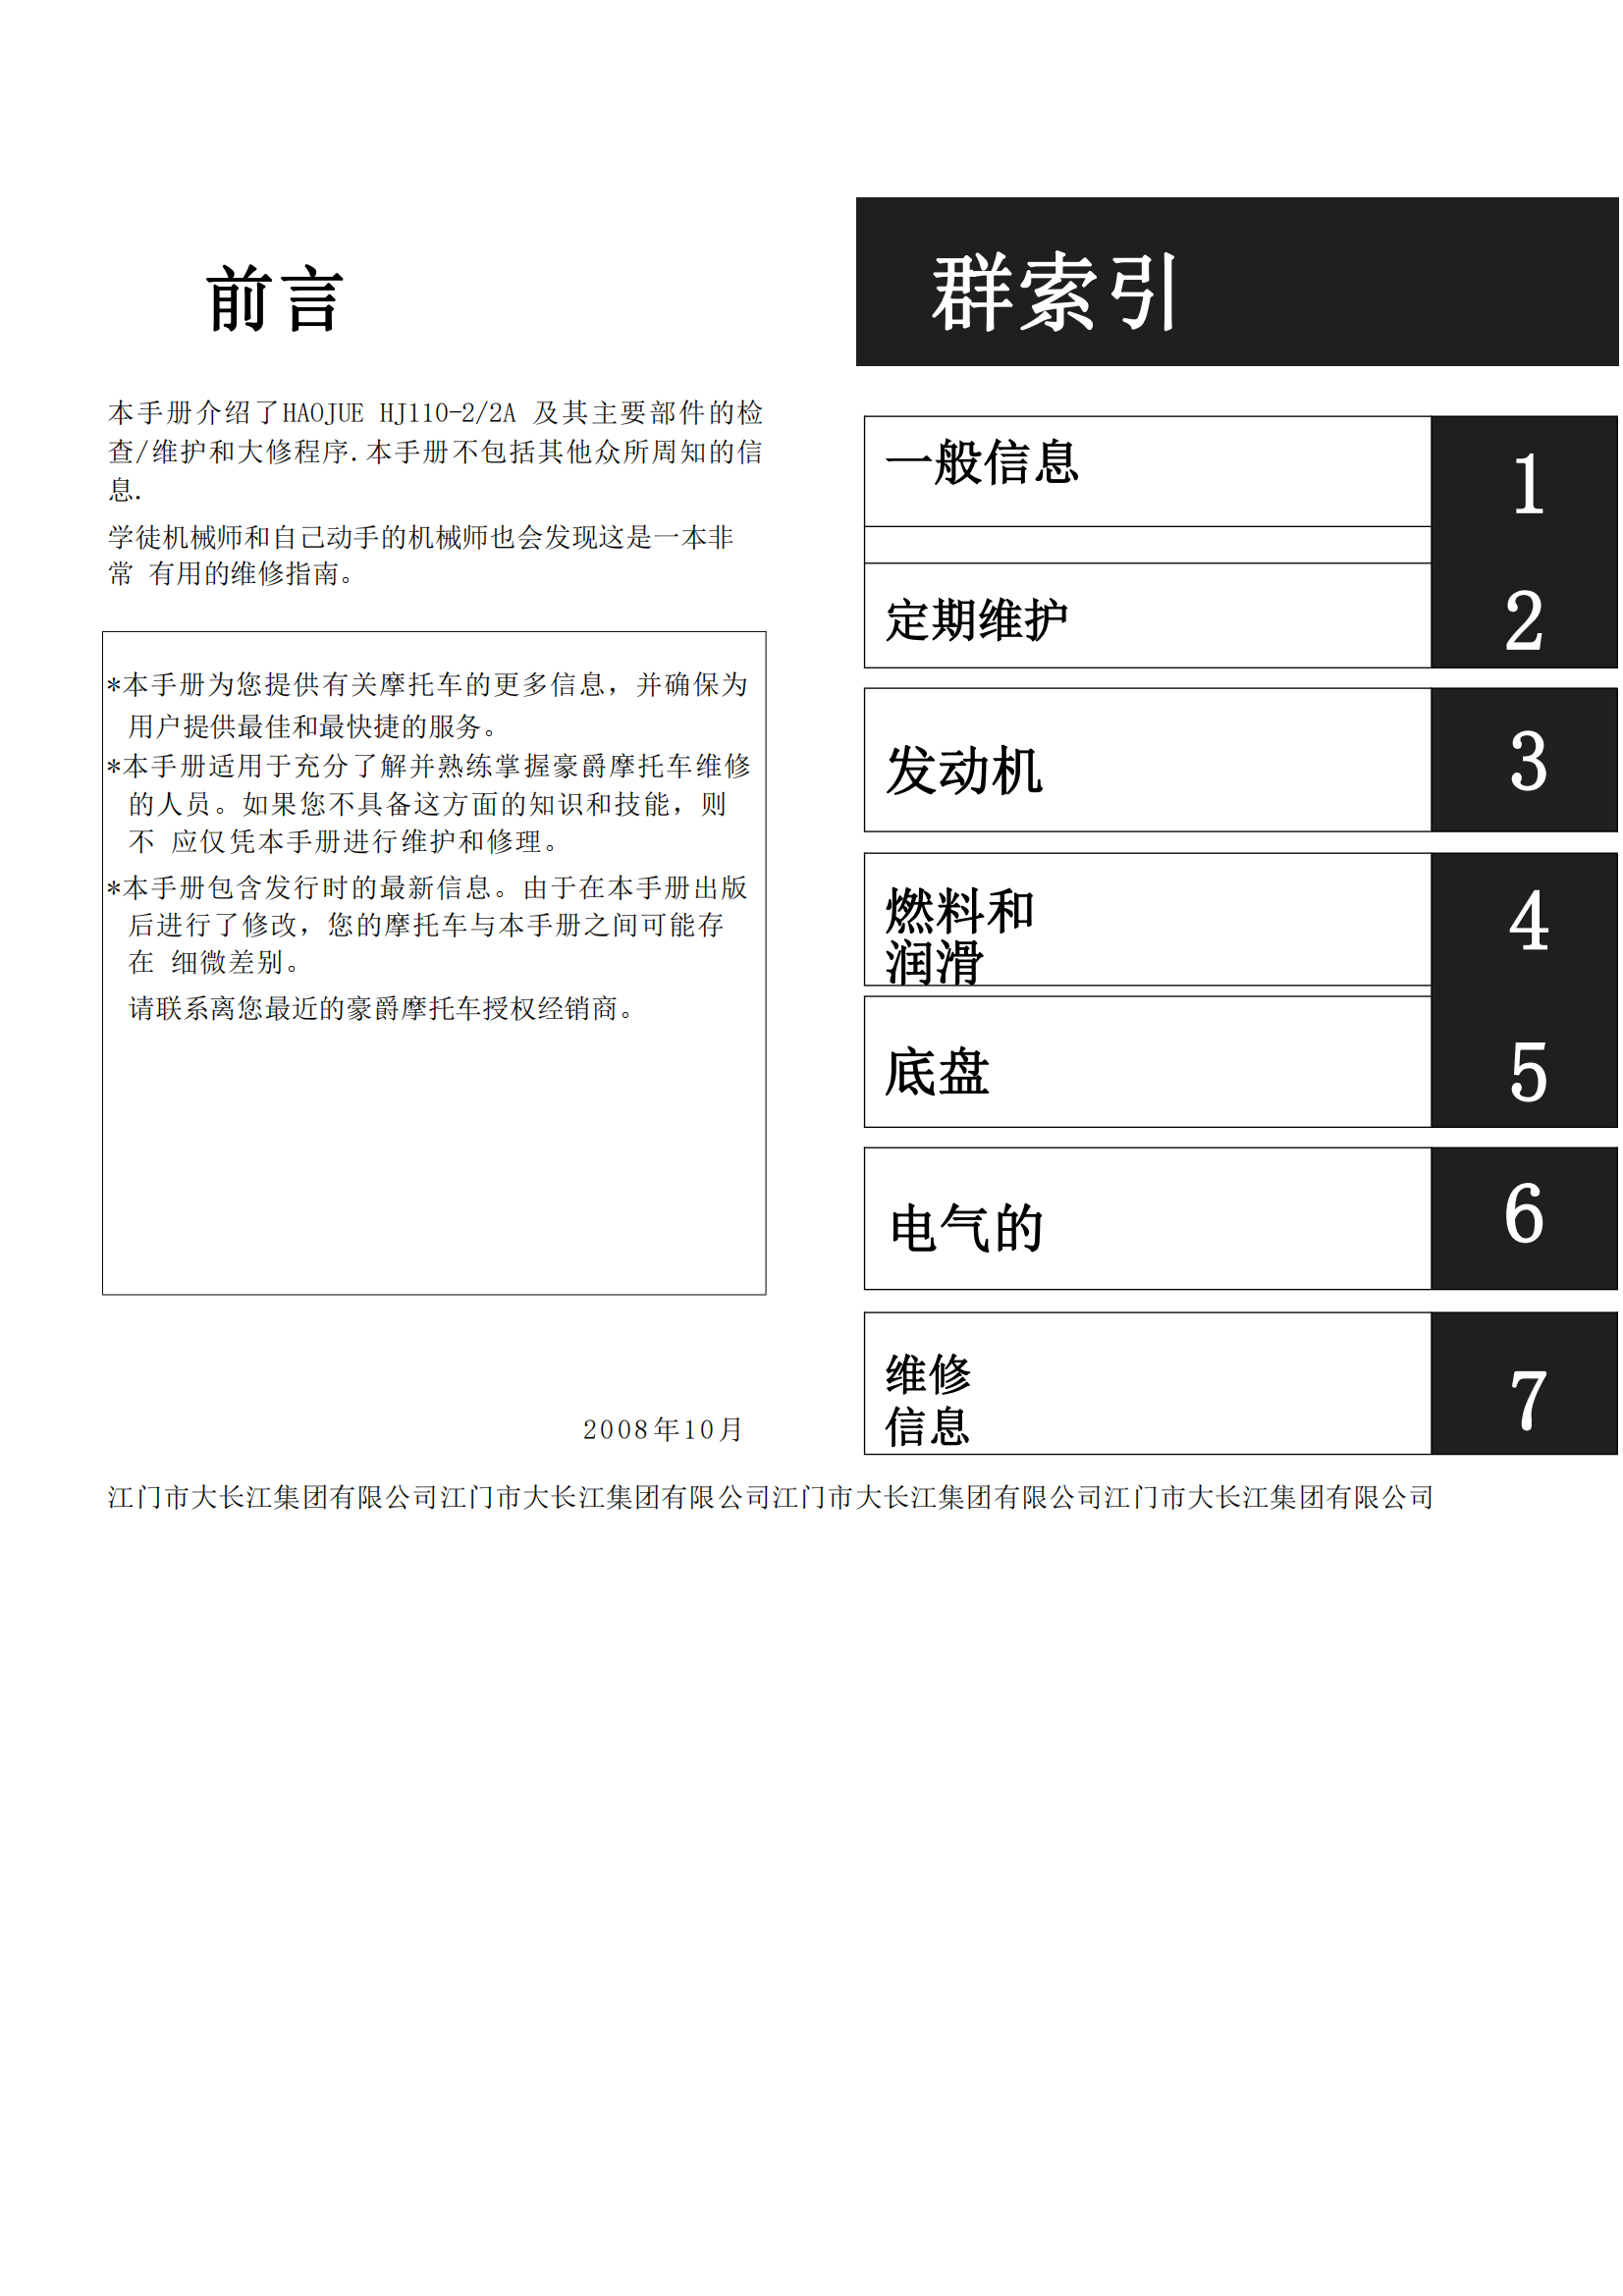 简体中文2008年豪爵HJ110-2 HJ110-2A维修手册插图2